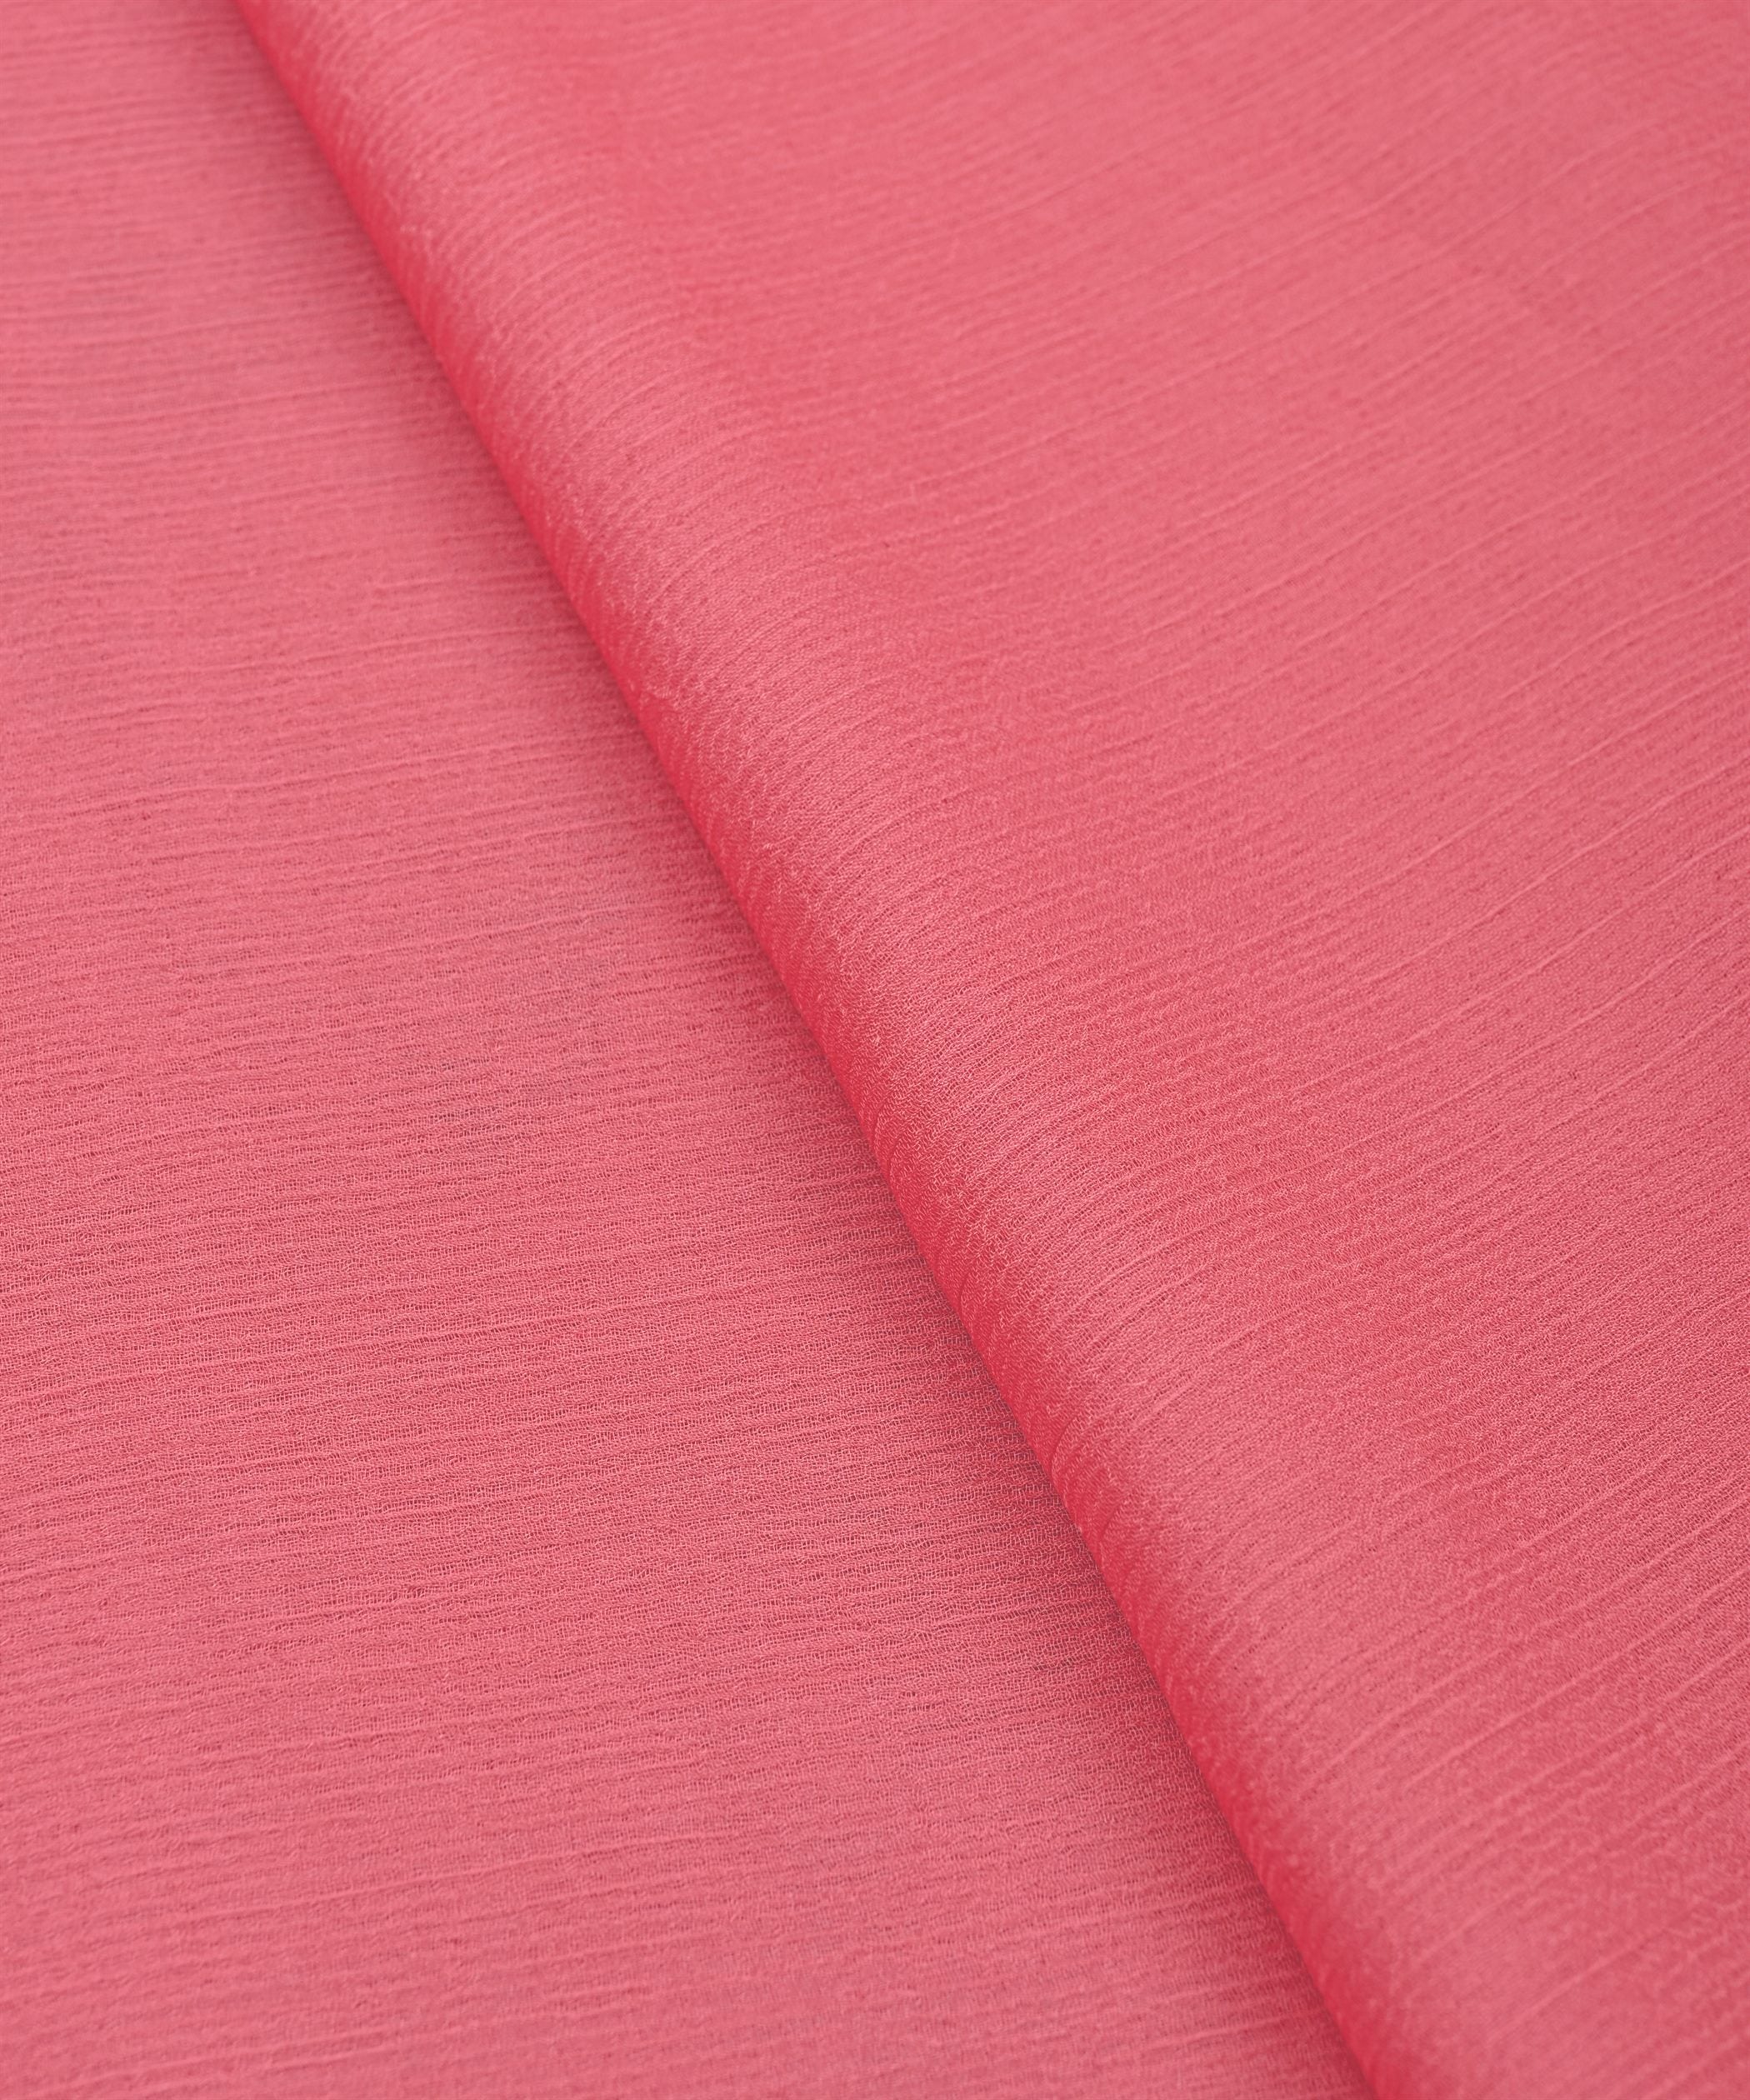 Peach Plain Dyed Bemberg Chiffon Fabric